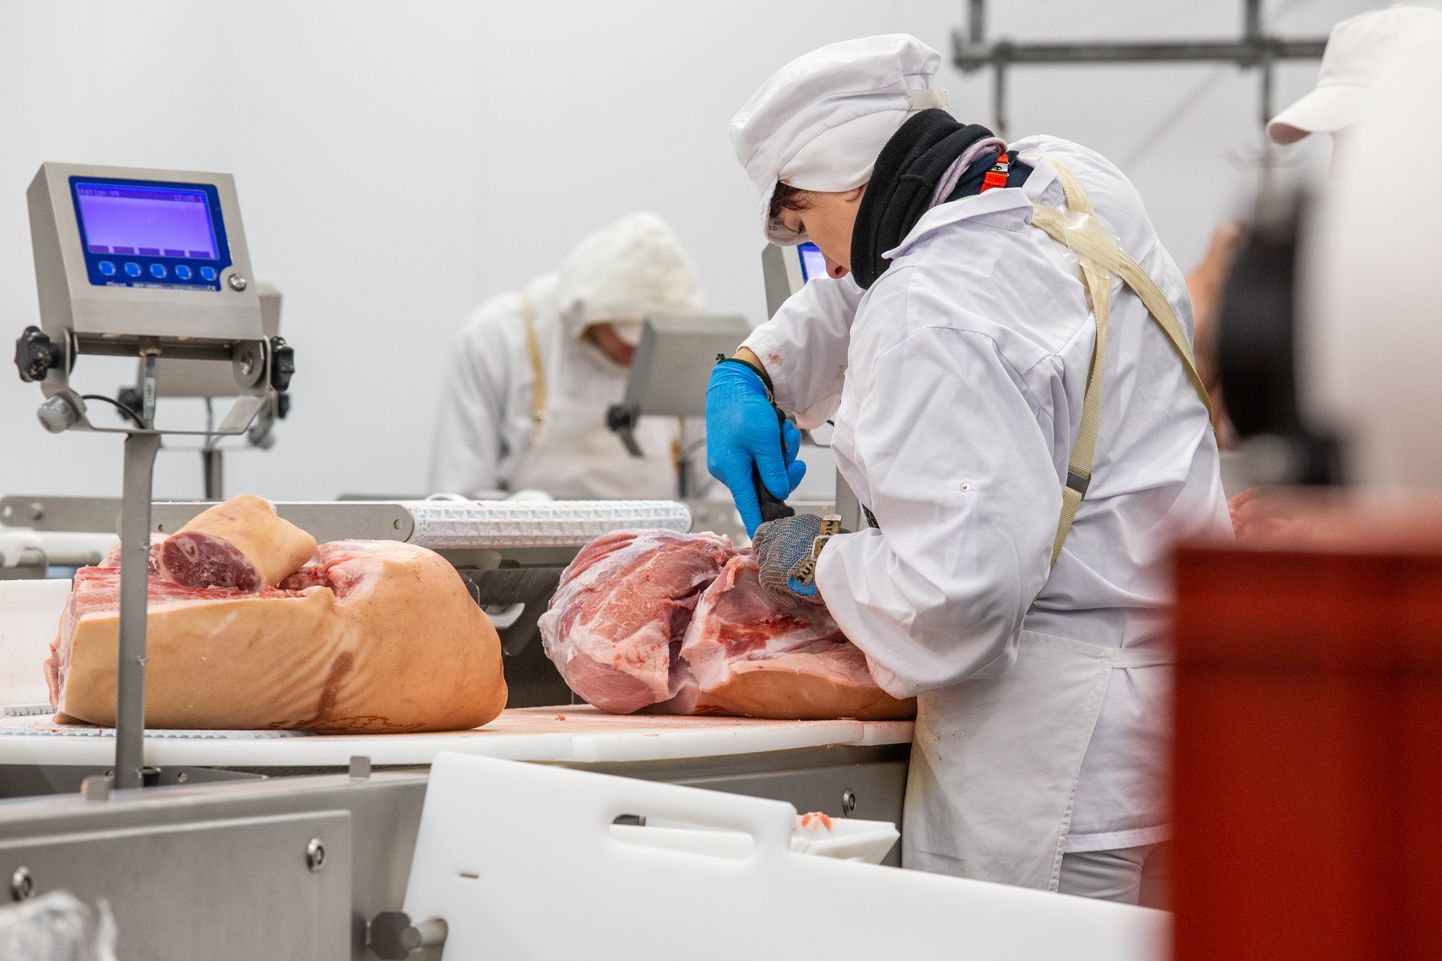 Võidukas meeskond pälvib Nõo lihatööstuse asutaja Toomas Kruustüki nimelisest auhinnafondist 5000 eurot.